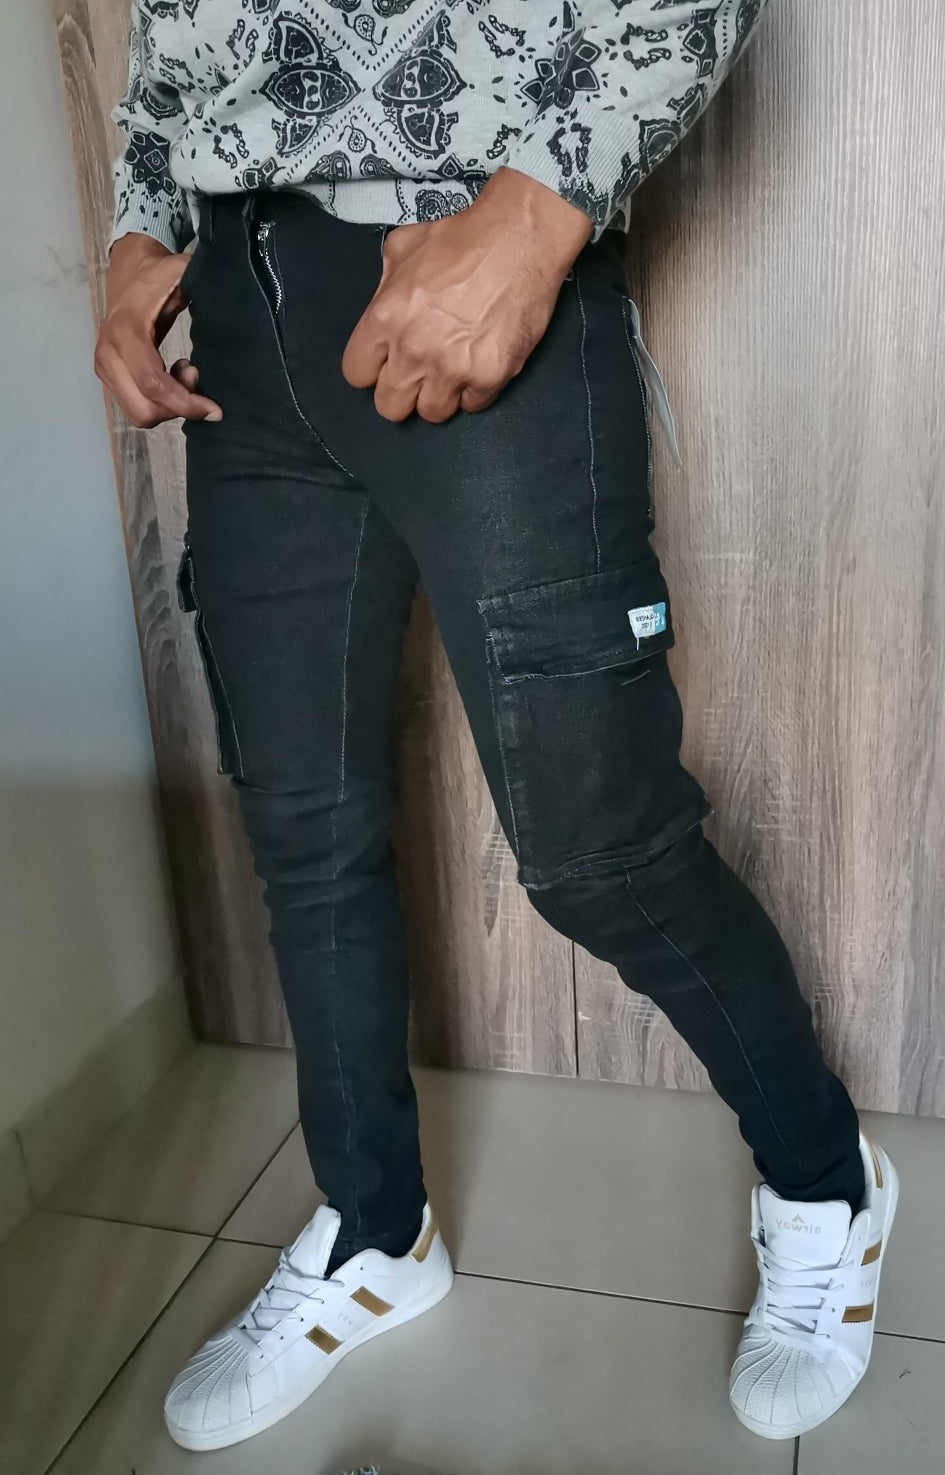 Black Cargo Skinny  jeans